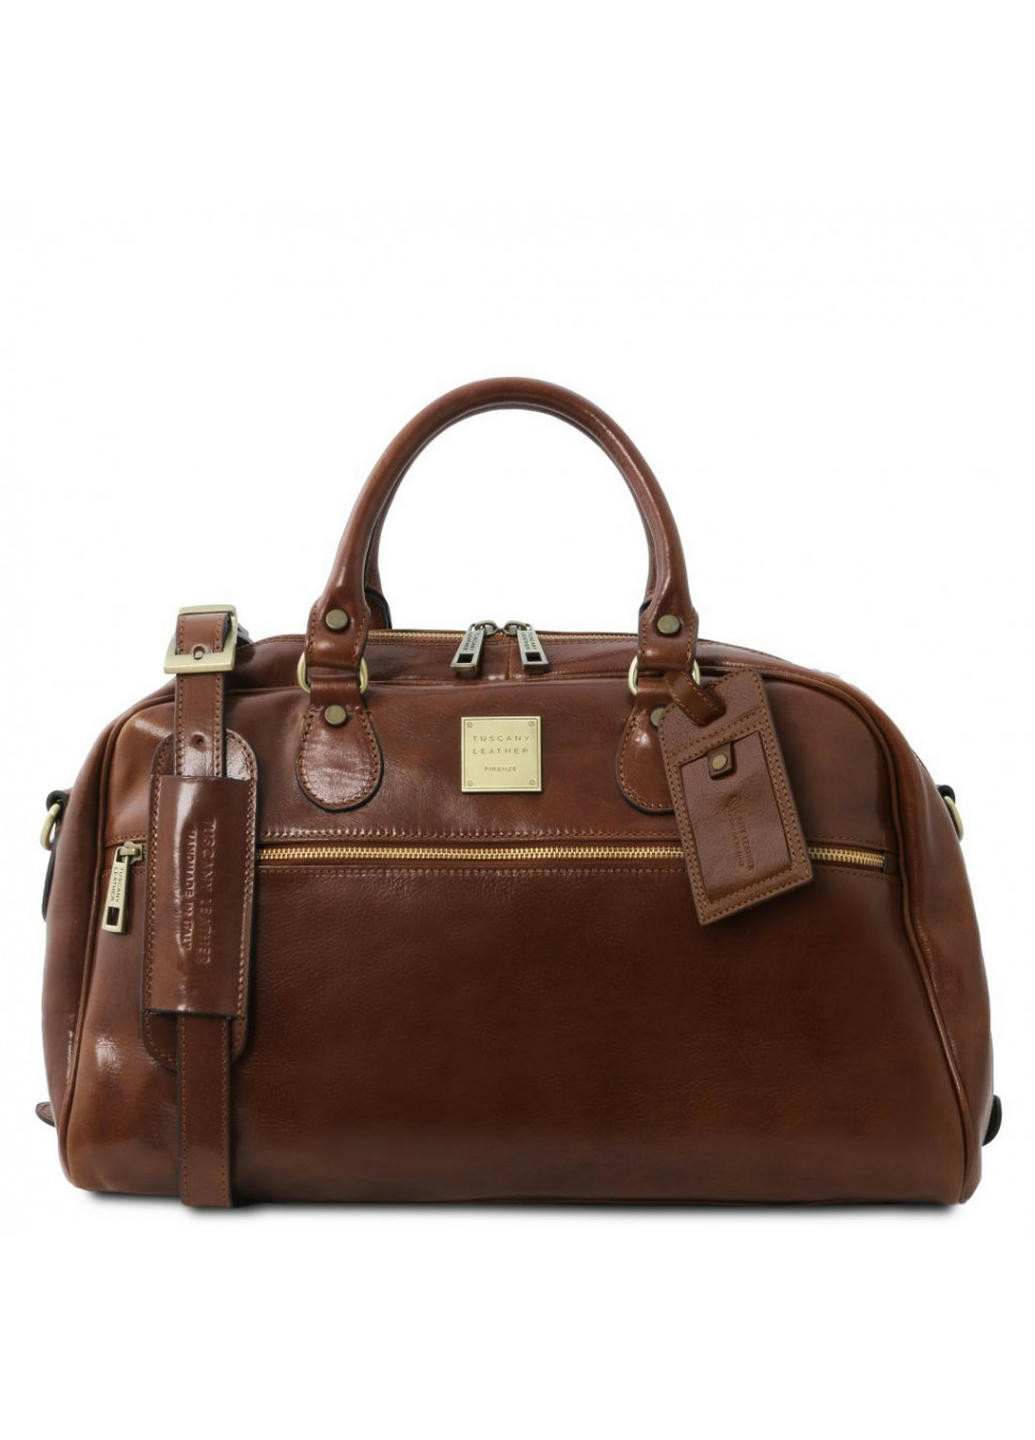 Шкіряна сумка дорожня - Малий розмір Tuscany TL141405 Voyager (Коричневий) Tuscany Leather (257656951)